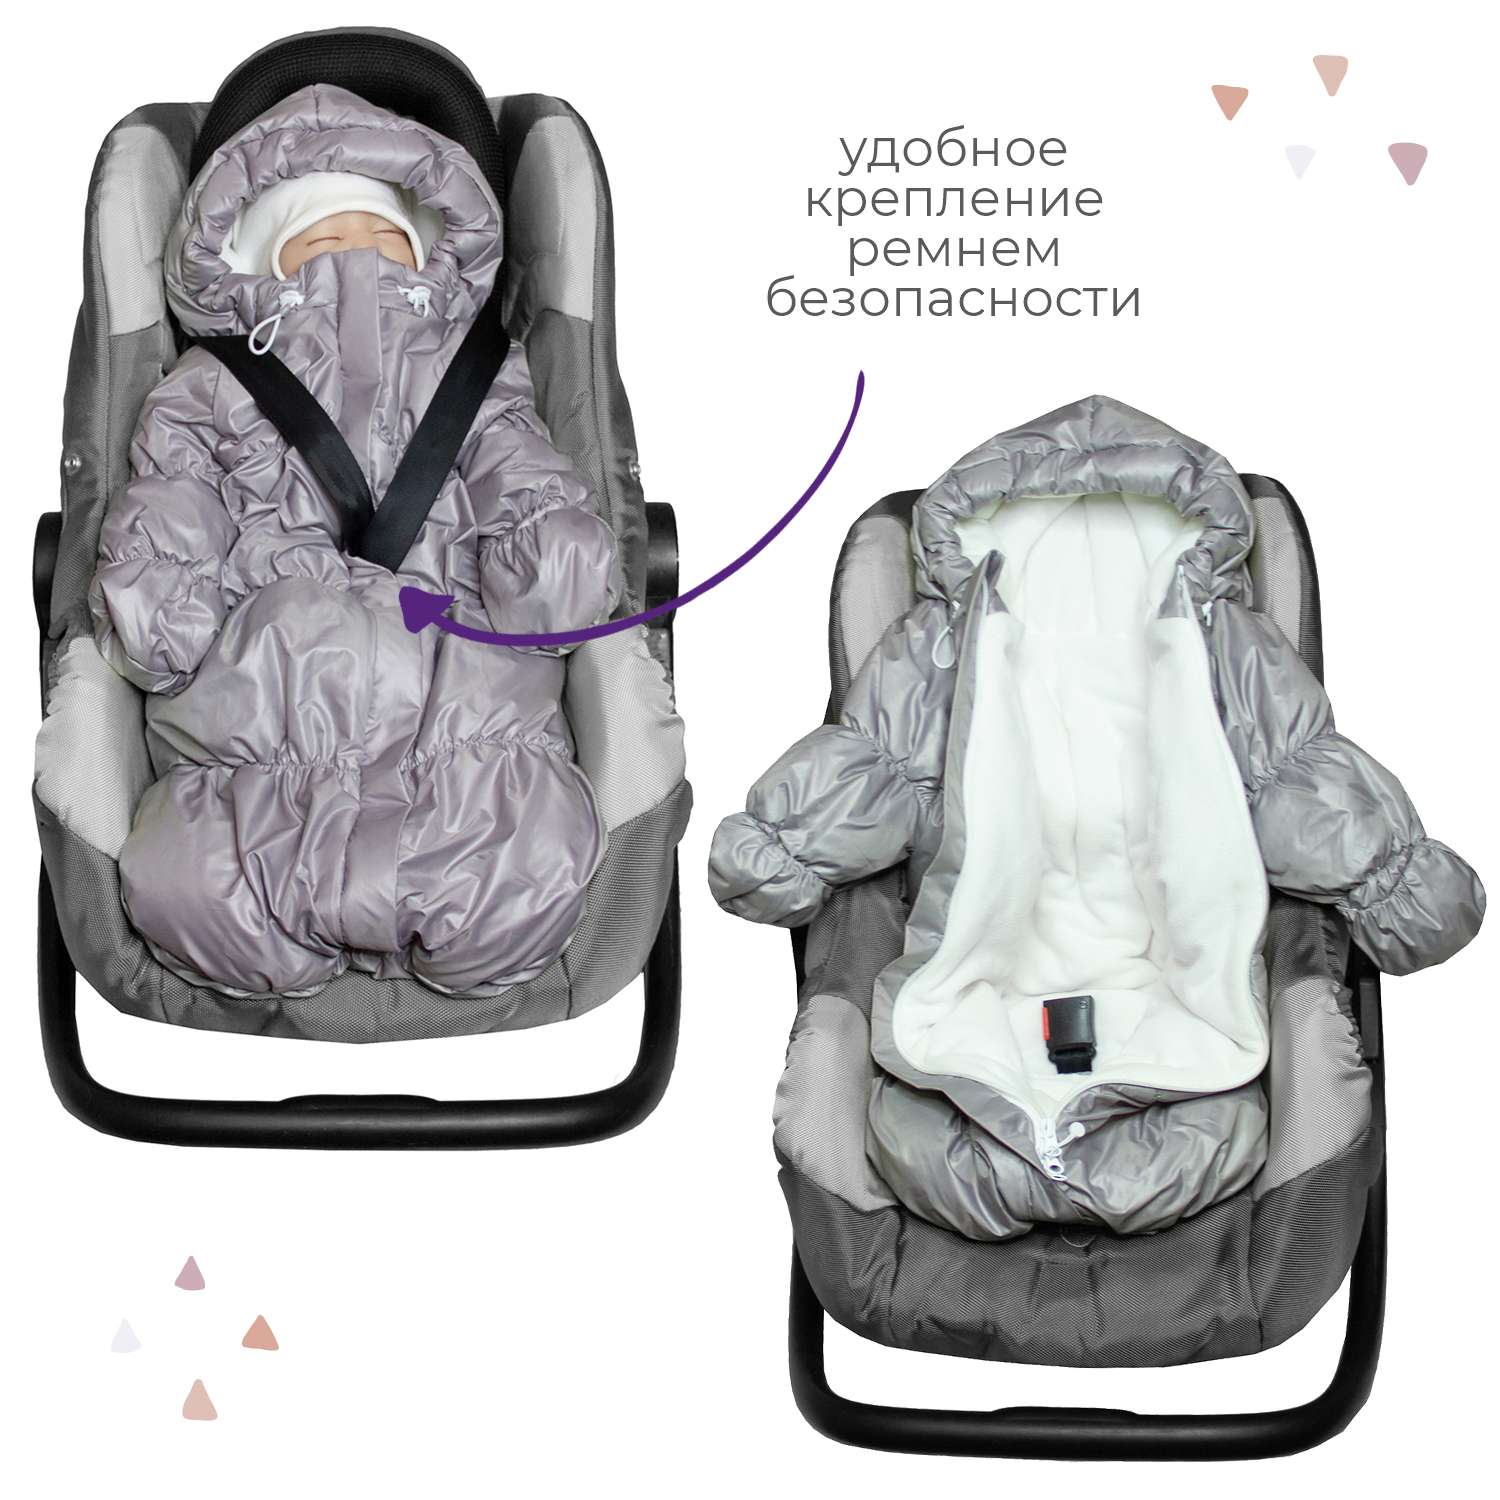 Конверт для новорожденного inlovery на выписку/в коляску «Маршмеллоу» серебряный - фото 4